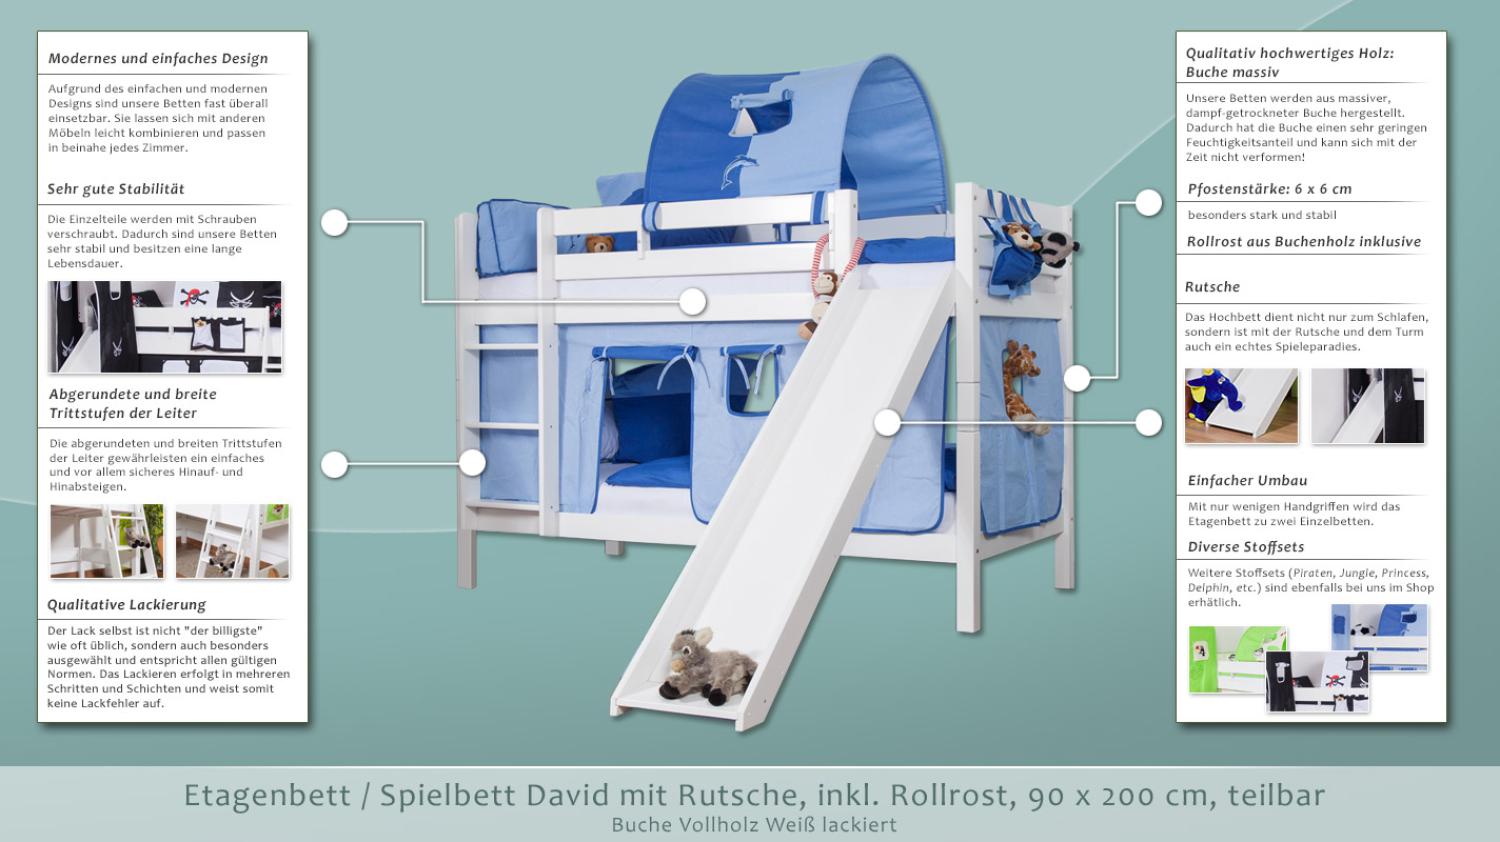 Etagenbett/Spielbett David Buche massiv weiß lackiert mit Rutsche, inkl. Rollrost - 90 x 200 cm, teilbar Bild 1